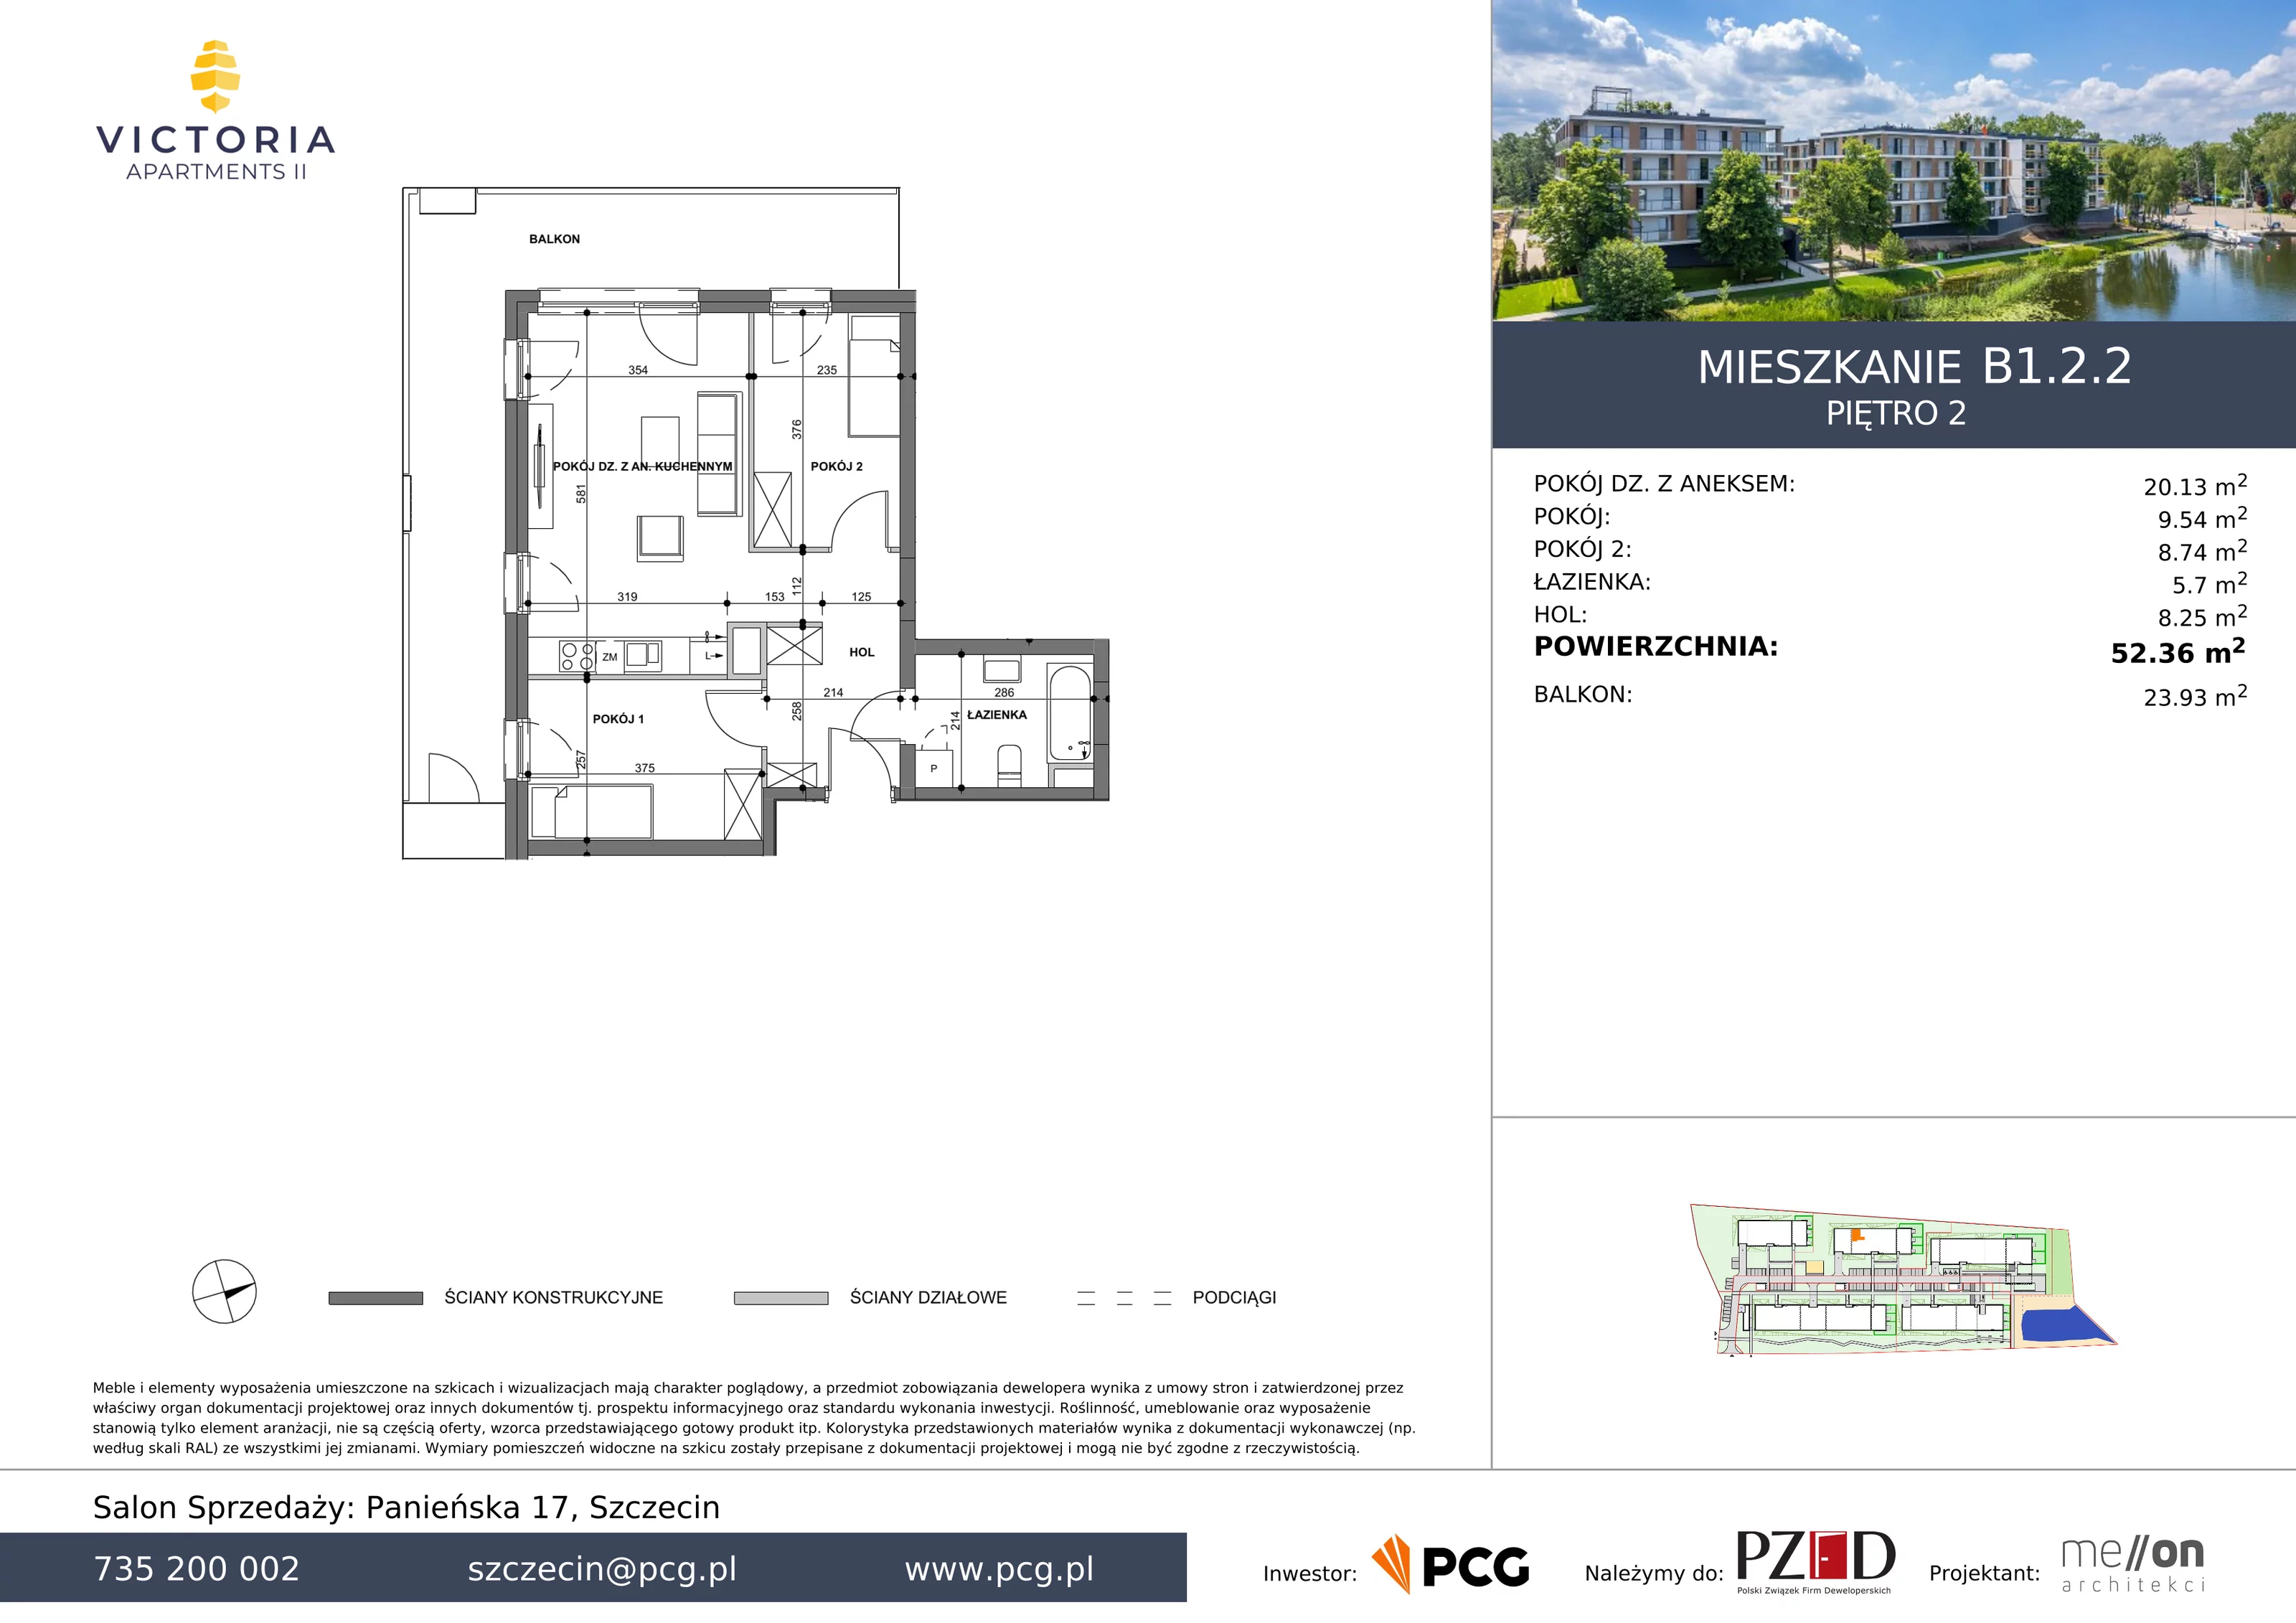 Apartament 52,36 m², piętro 2, oferta nr B1.2.2, Victoria Apartments II, Szczecin, Prawobrzeże, Dąbie, ul. Przestrzenna